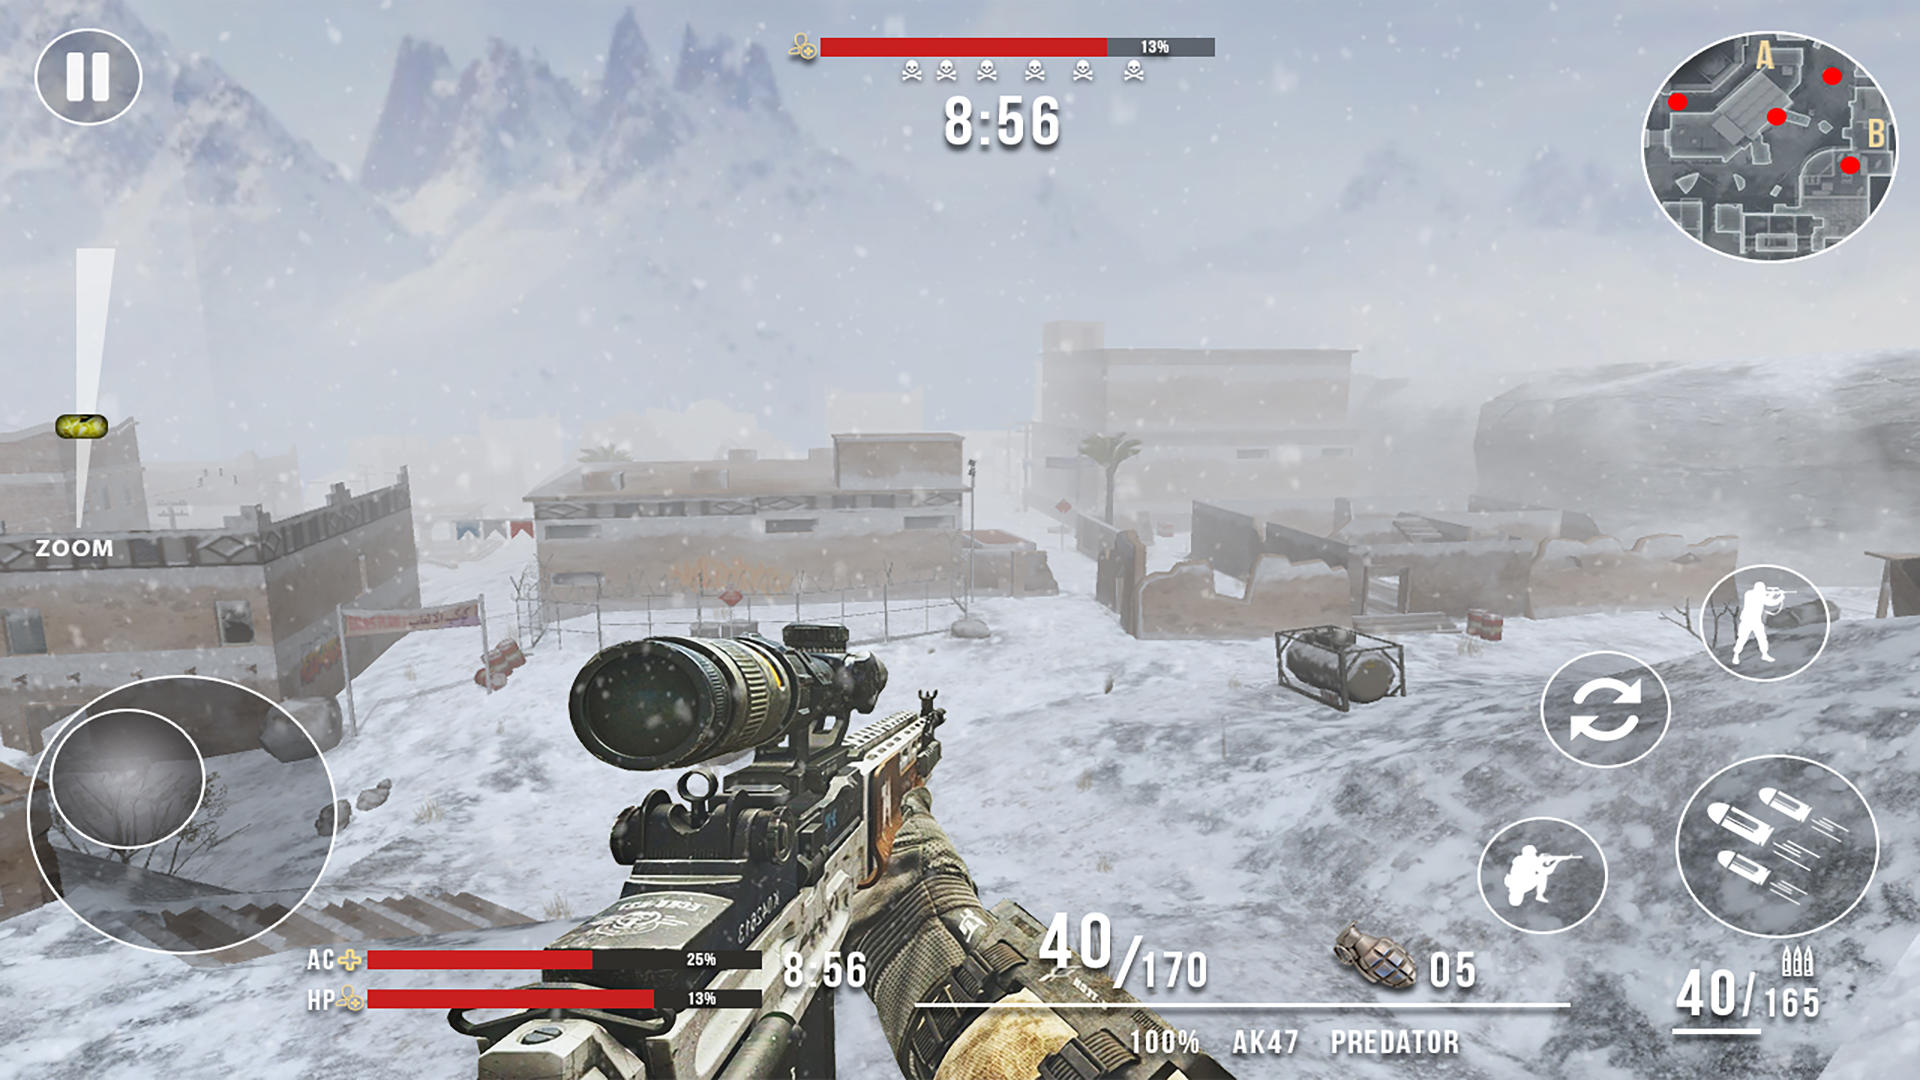 Screenshot 1 of Jeux de Guerre et Action FPS 3.4.2